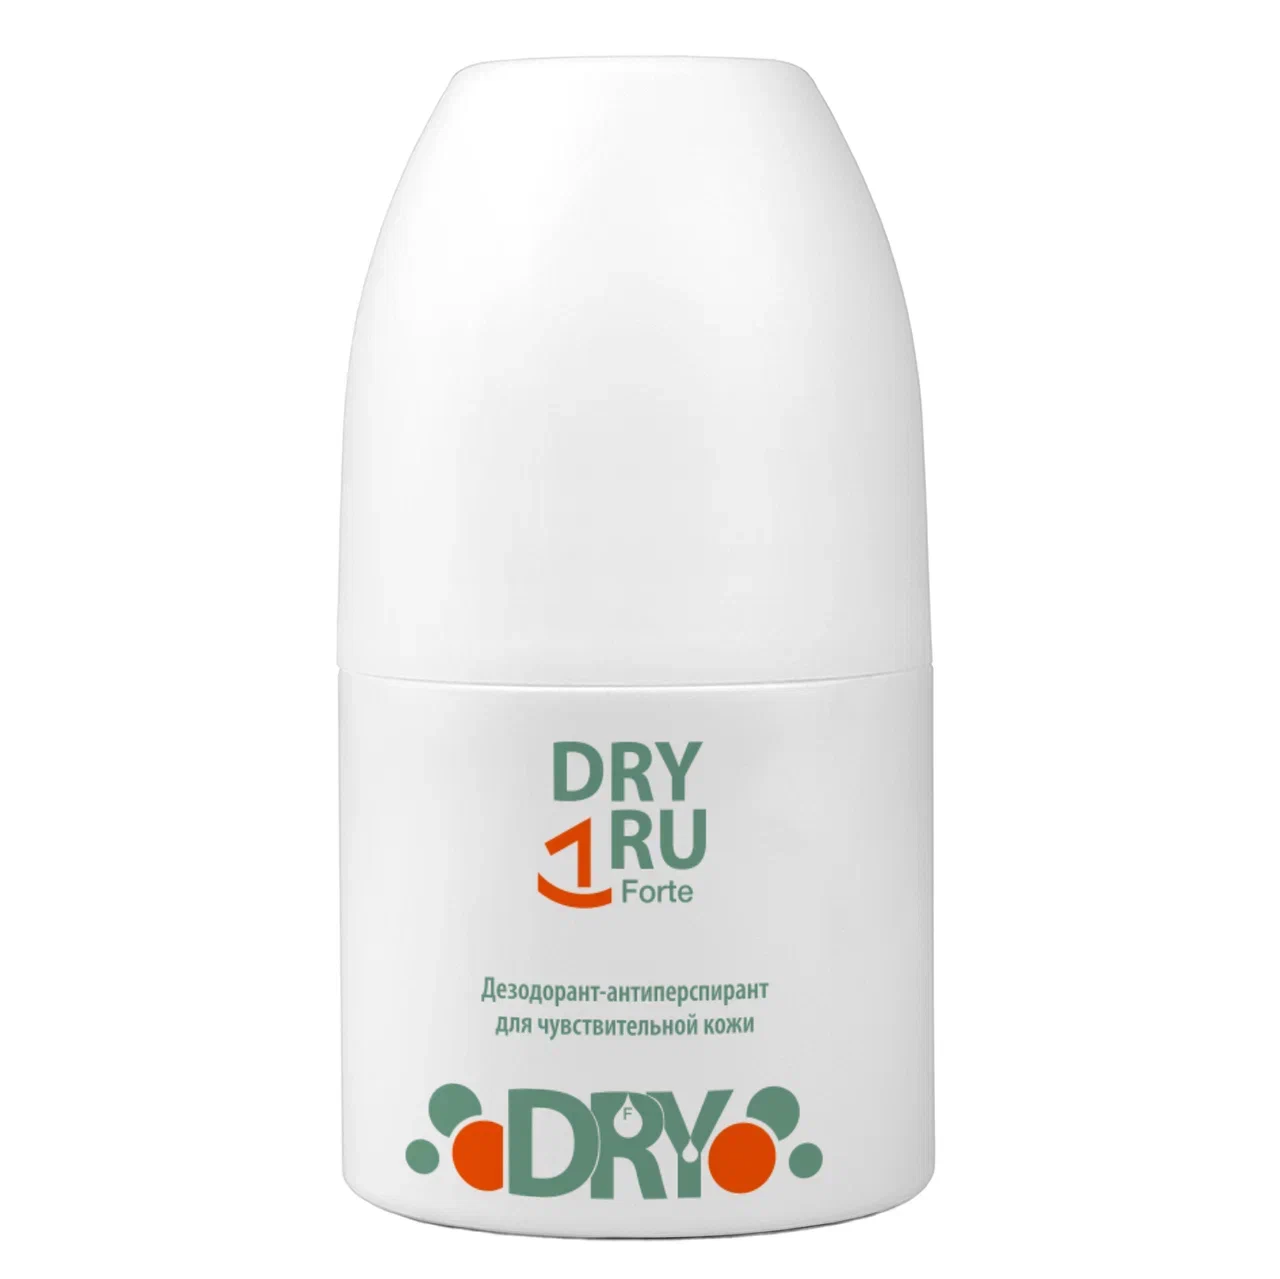 Дезодоран-антиперспирантт DRY RU Forte мужской, шариковый, от пота и запаха 50 мл 911 теймурова спрей д ног от запаха и пота 150мл